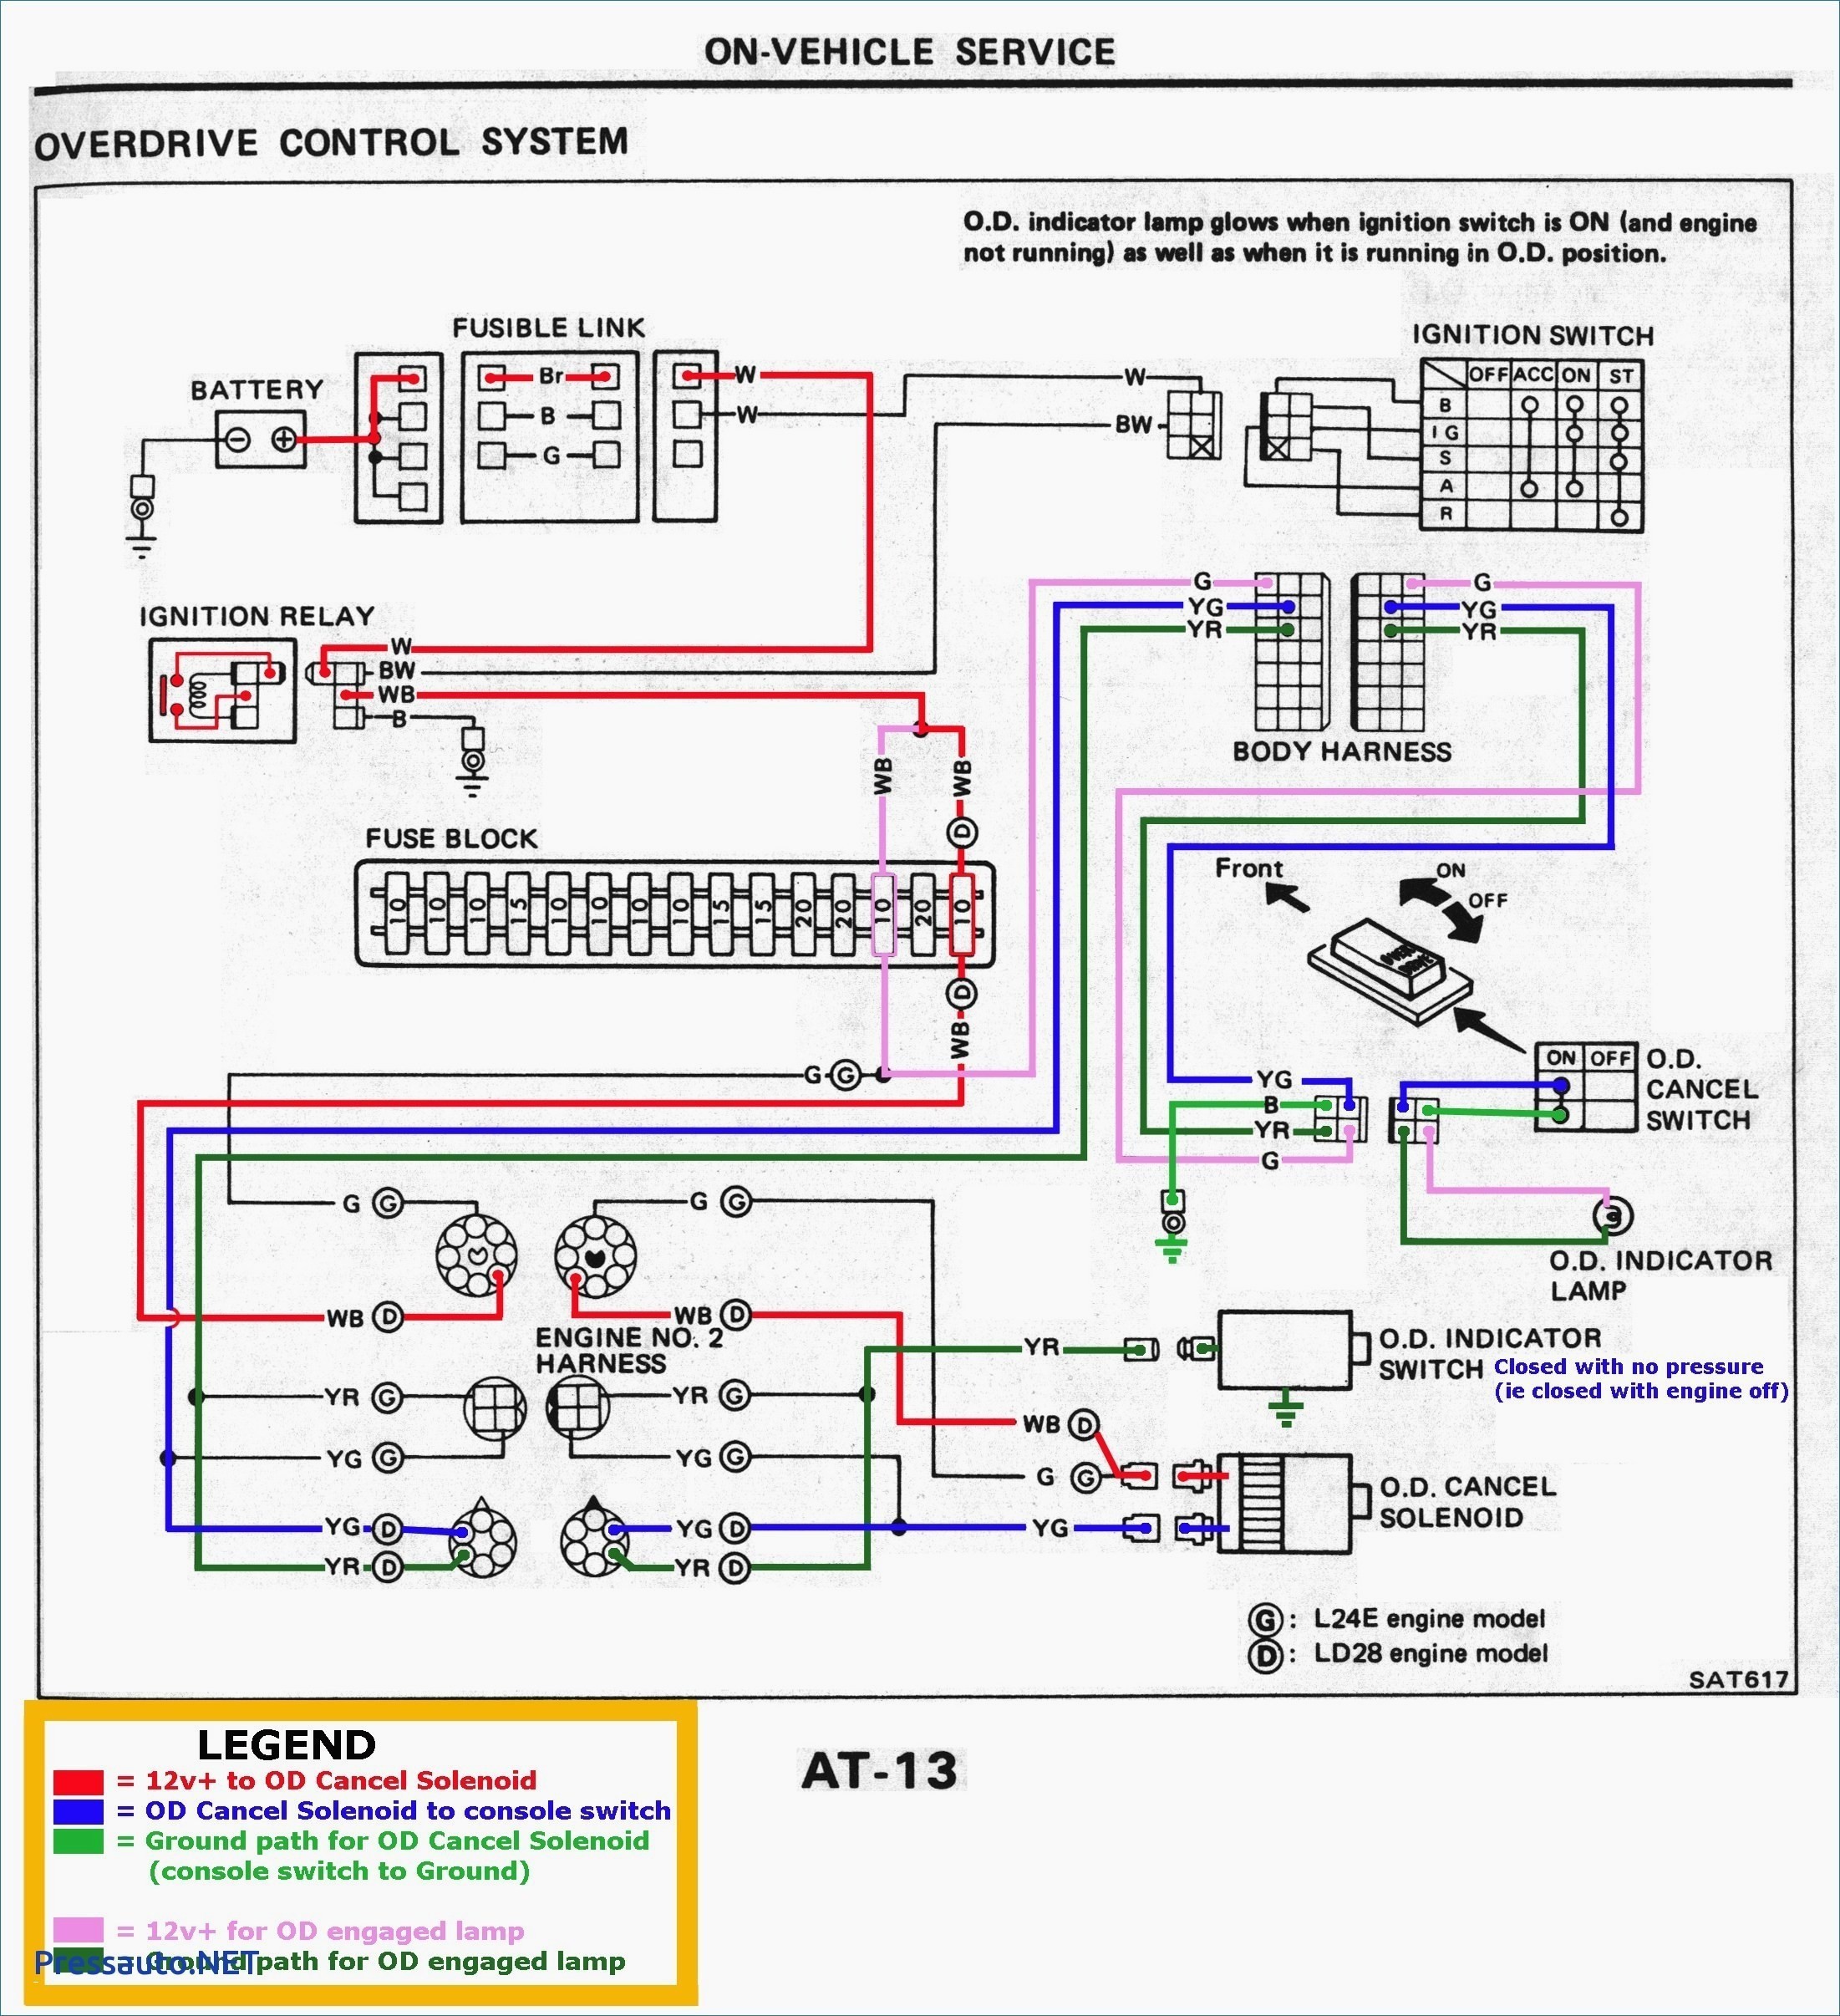 1999 Vw Beetle Engine Diagram Vw R32 Wiring Diagram Experts Wiring Diagram • Of 1999 Vw Beetle Engine Diagram